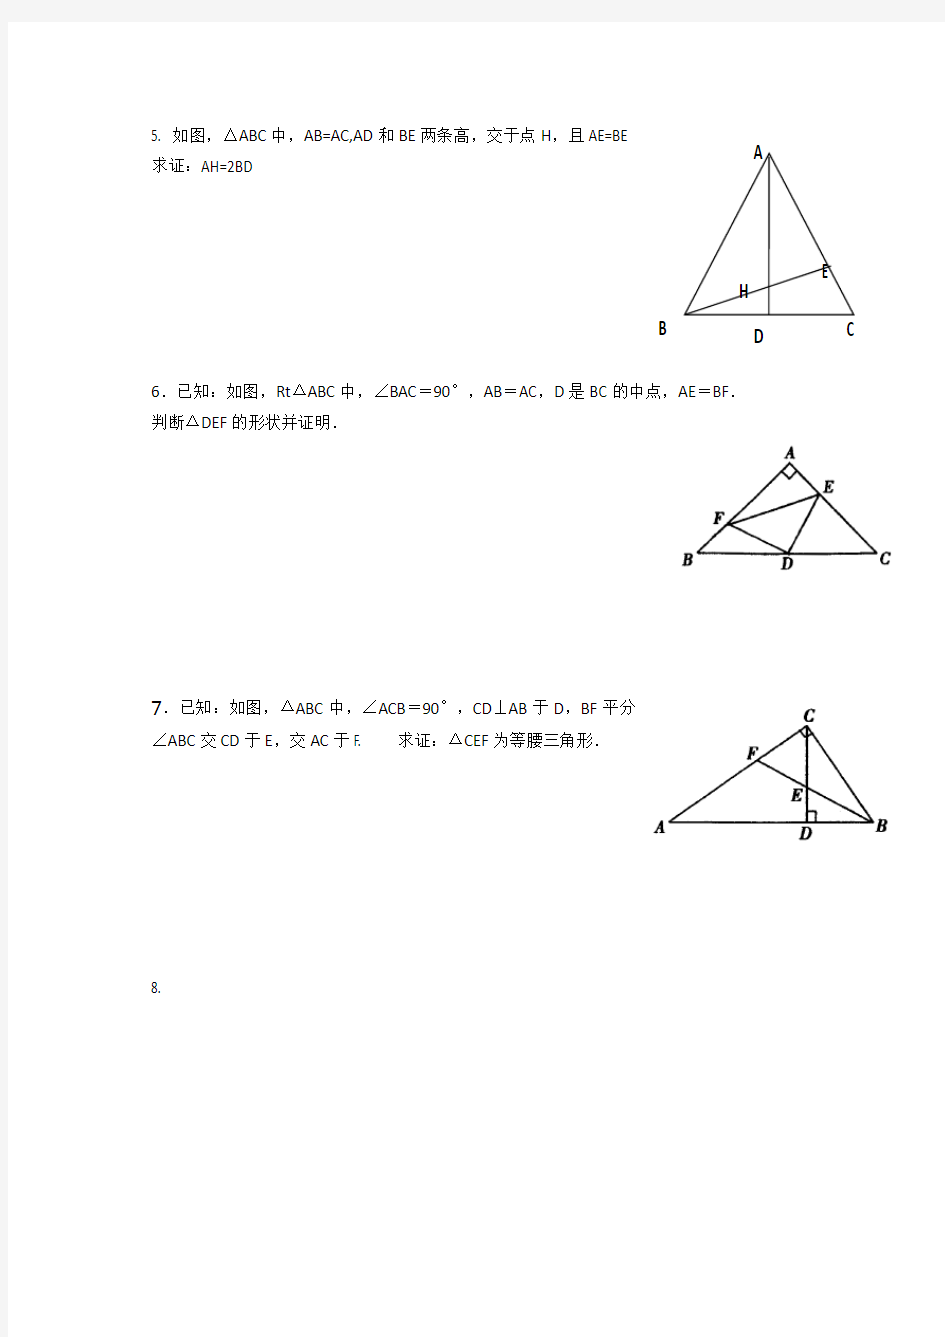 等腰三角形、等边三角形证明题测试